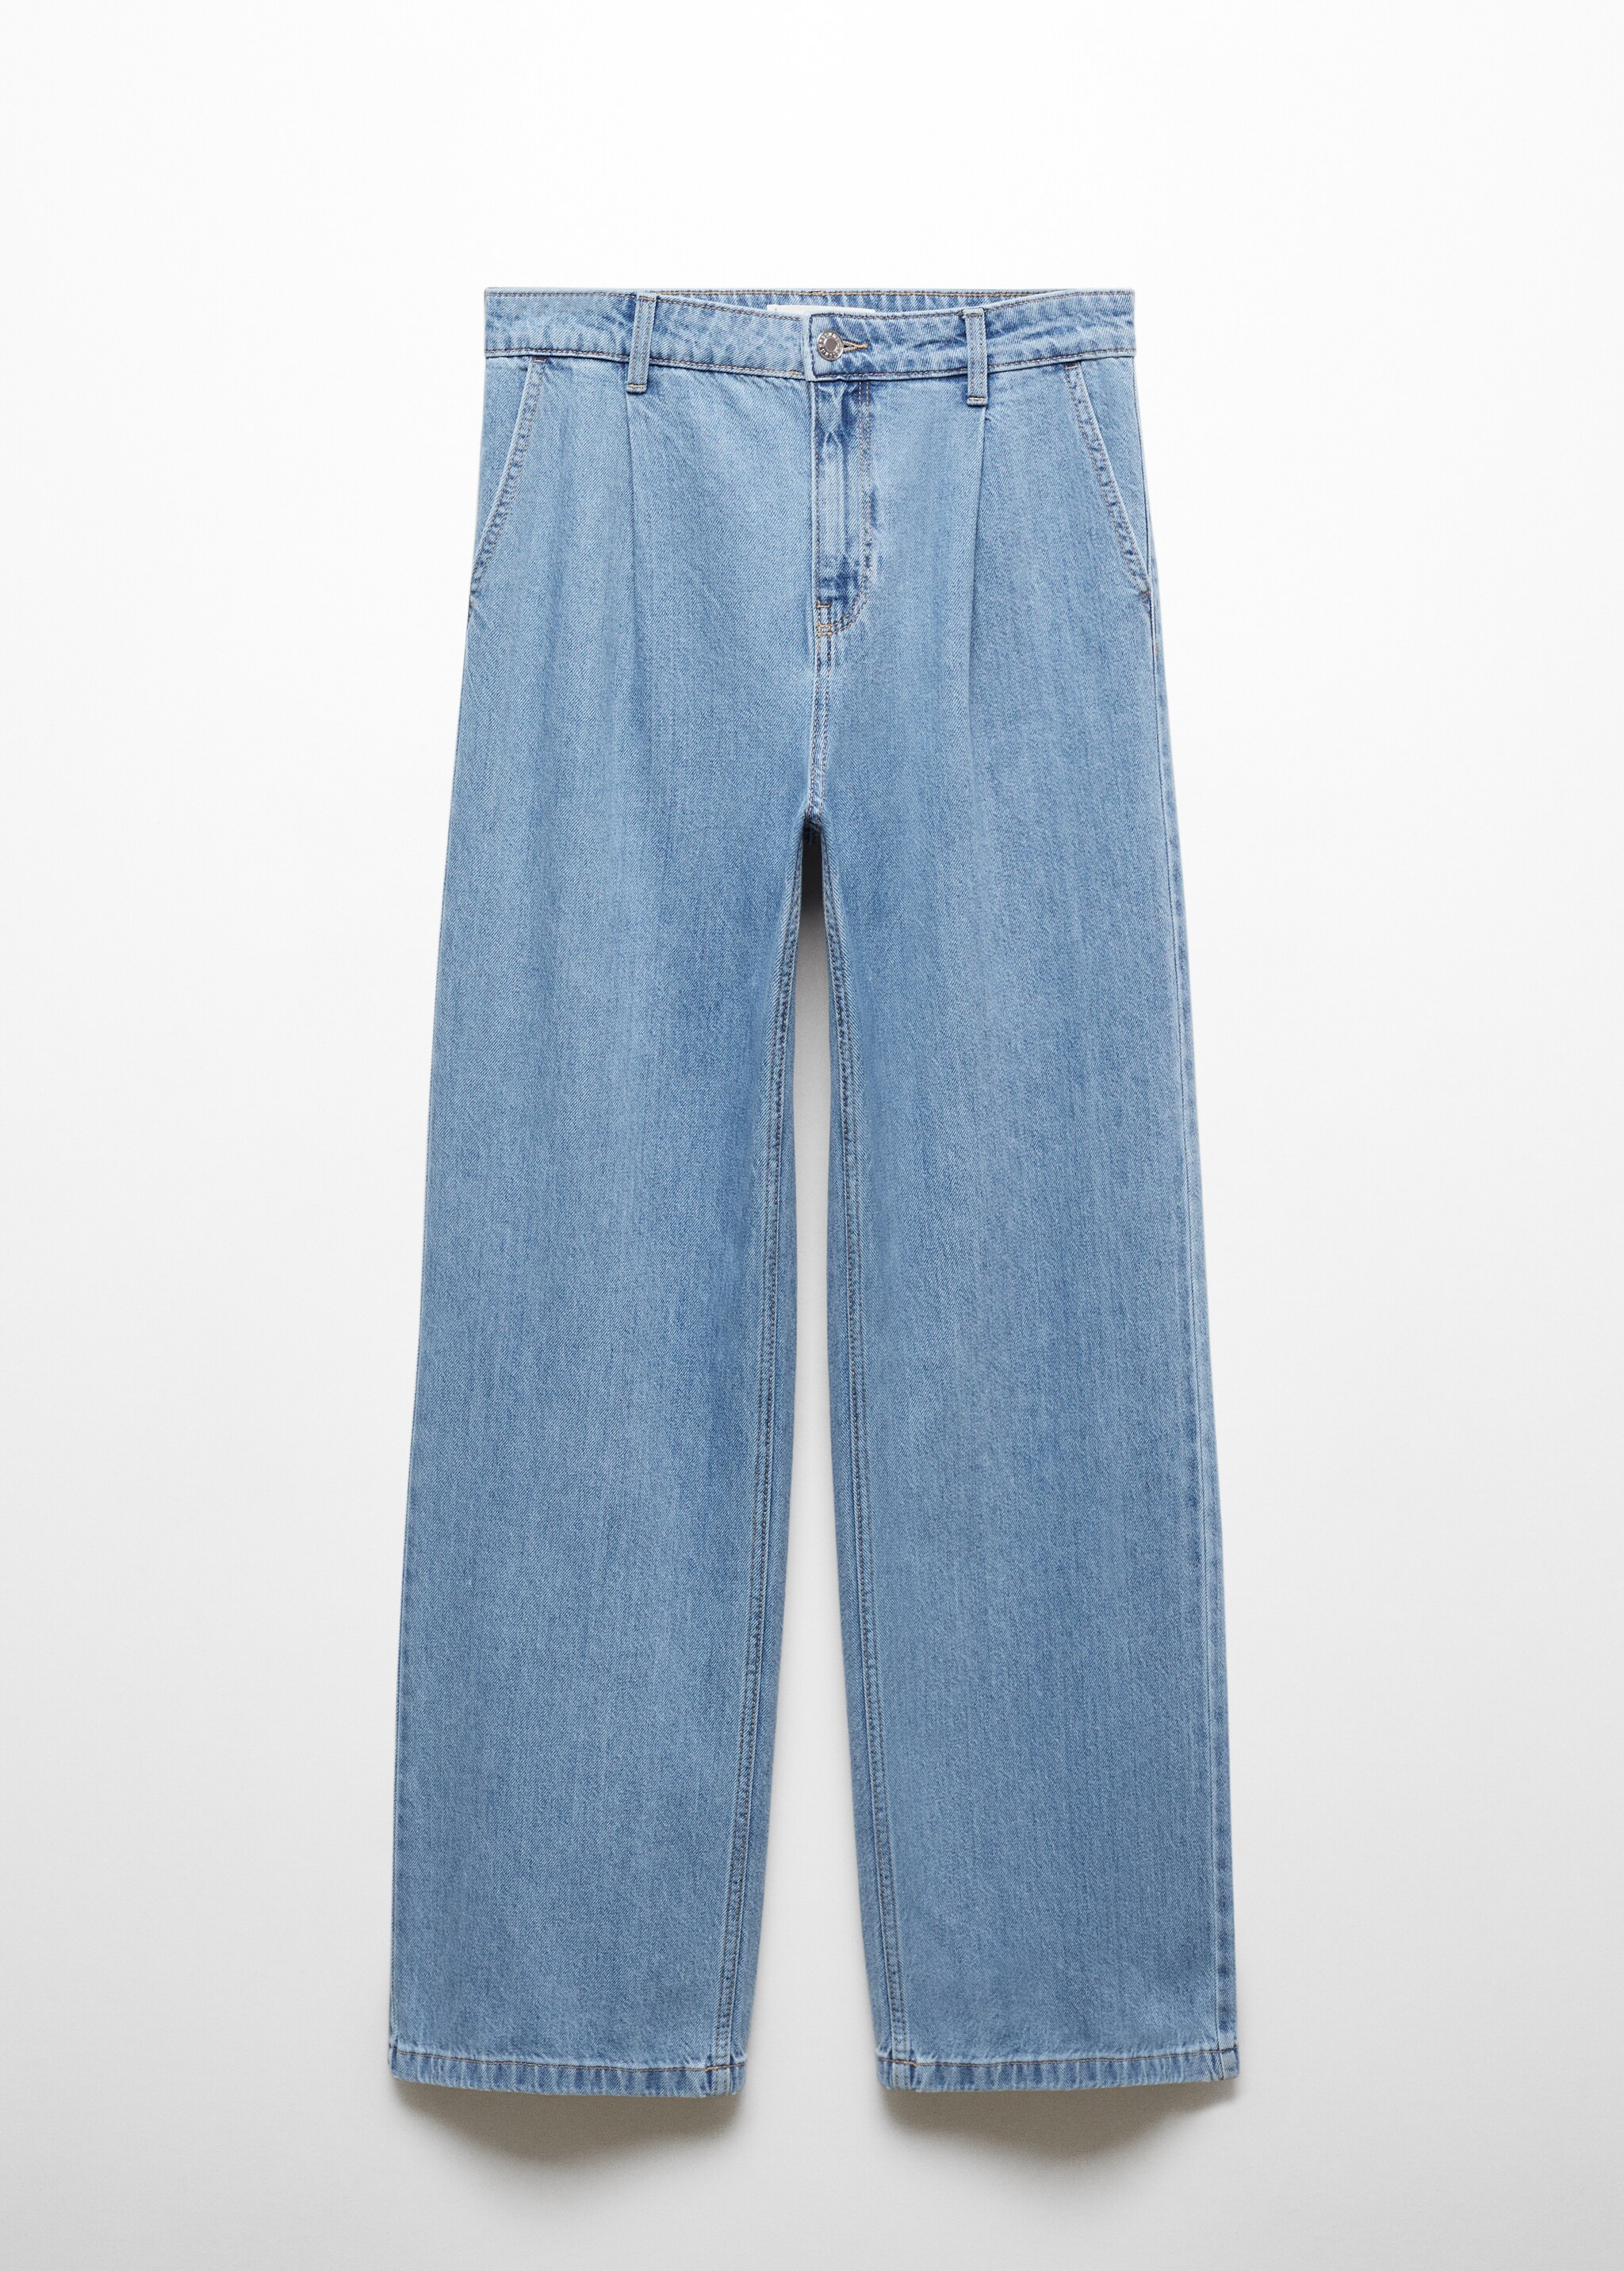 Прямые джинсы с защипами - Изделие без модели